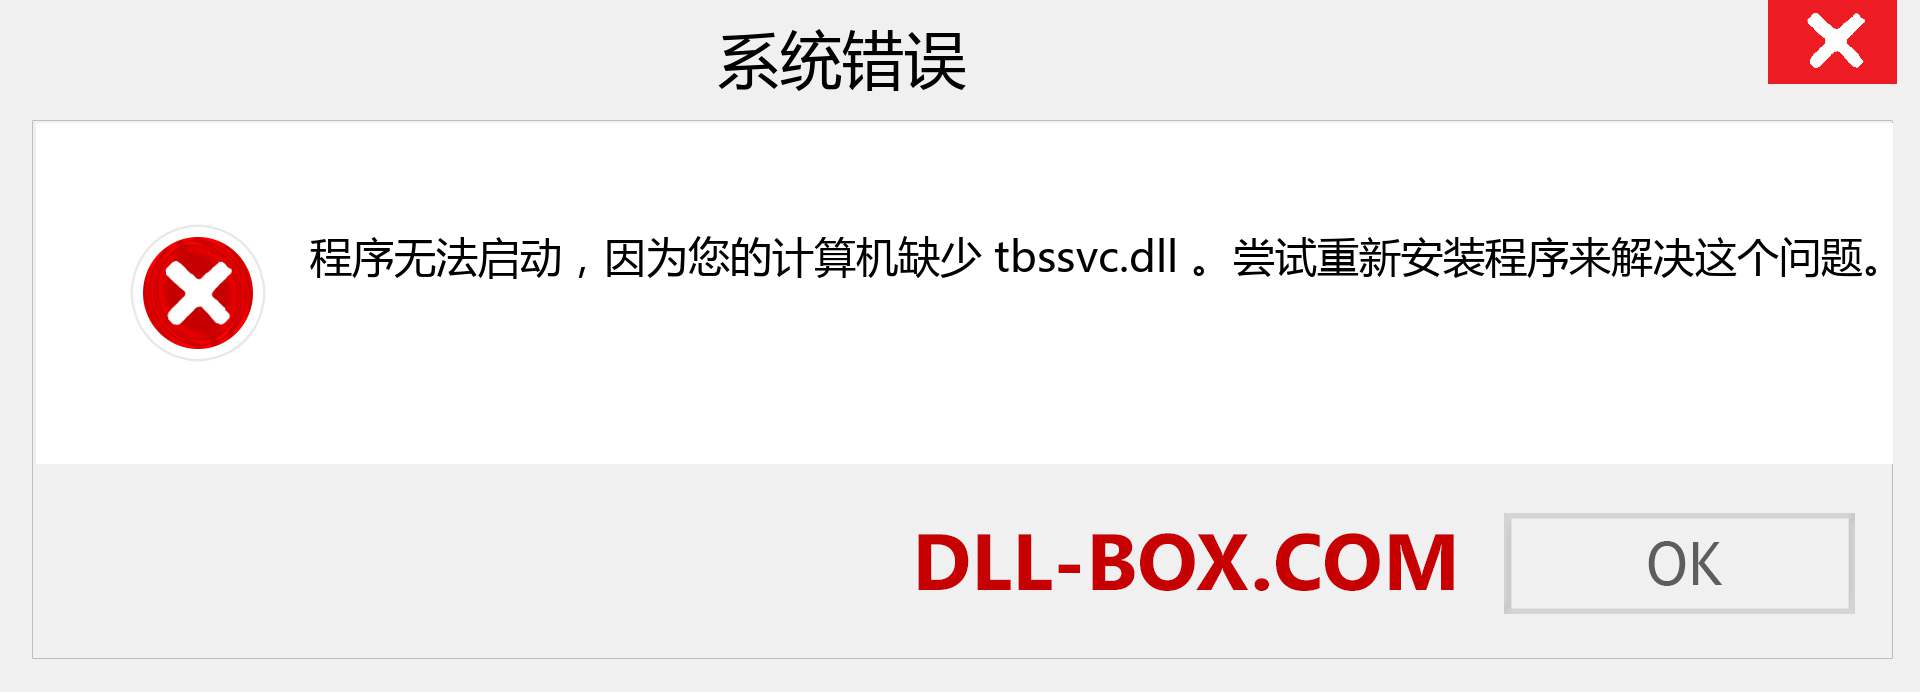 tbssvc.dll 文件丢失？。 适用于 Windows 7、8、10 的下载 - 修复 Windows、照片、图像上的 tbssvc dll 丢失错误